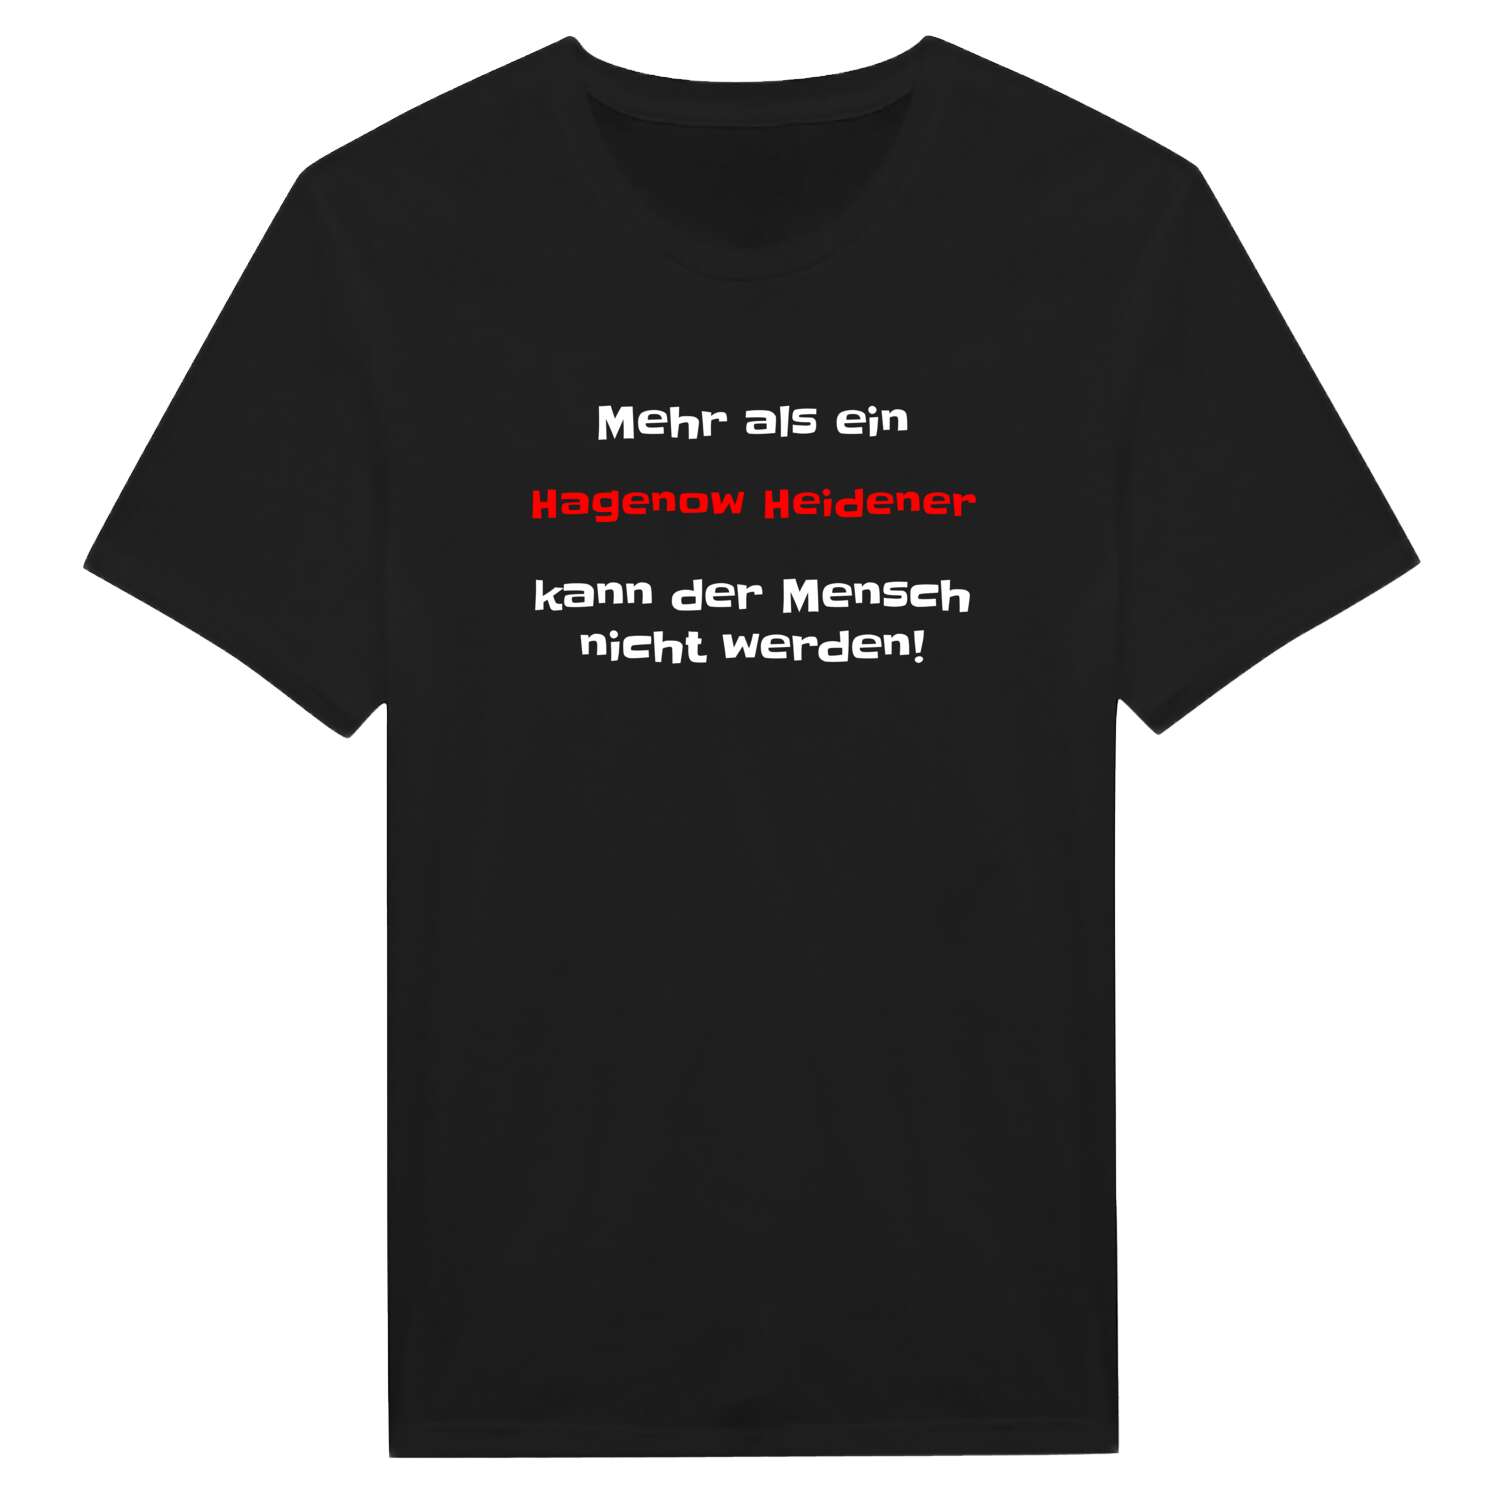 Hagenow Heide T-Shirt »Mehr als ein«